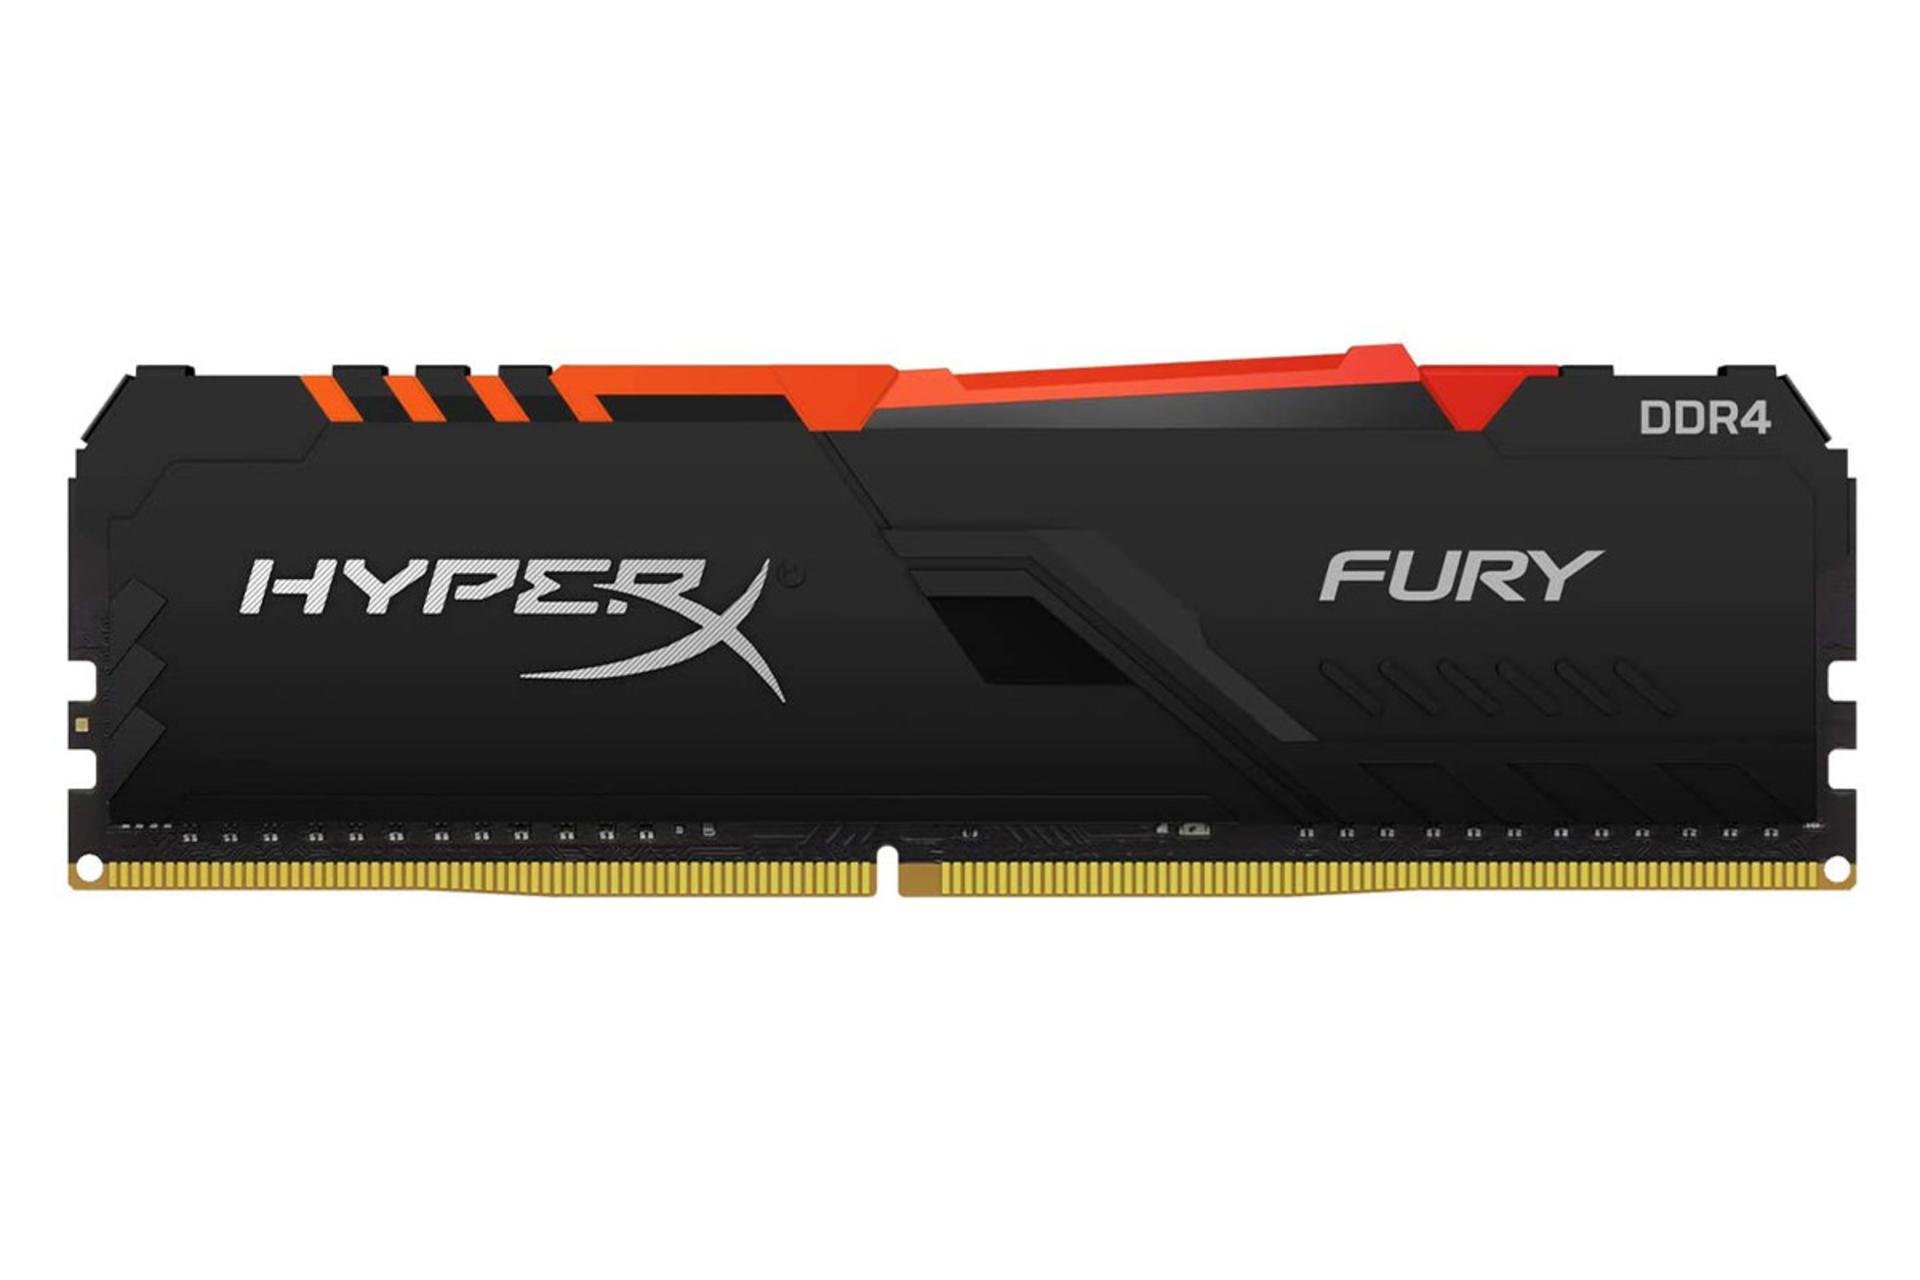  رم هایپر ایکس Fury RGB ظرفیت 8 گیگابایت از نوع DDR4-3200